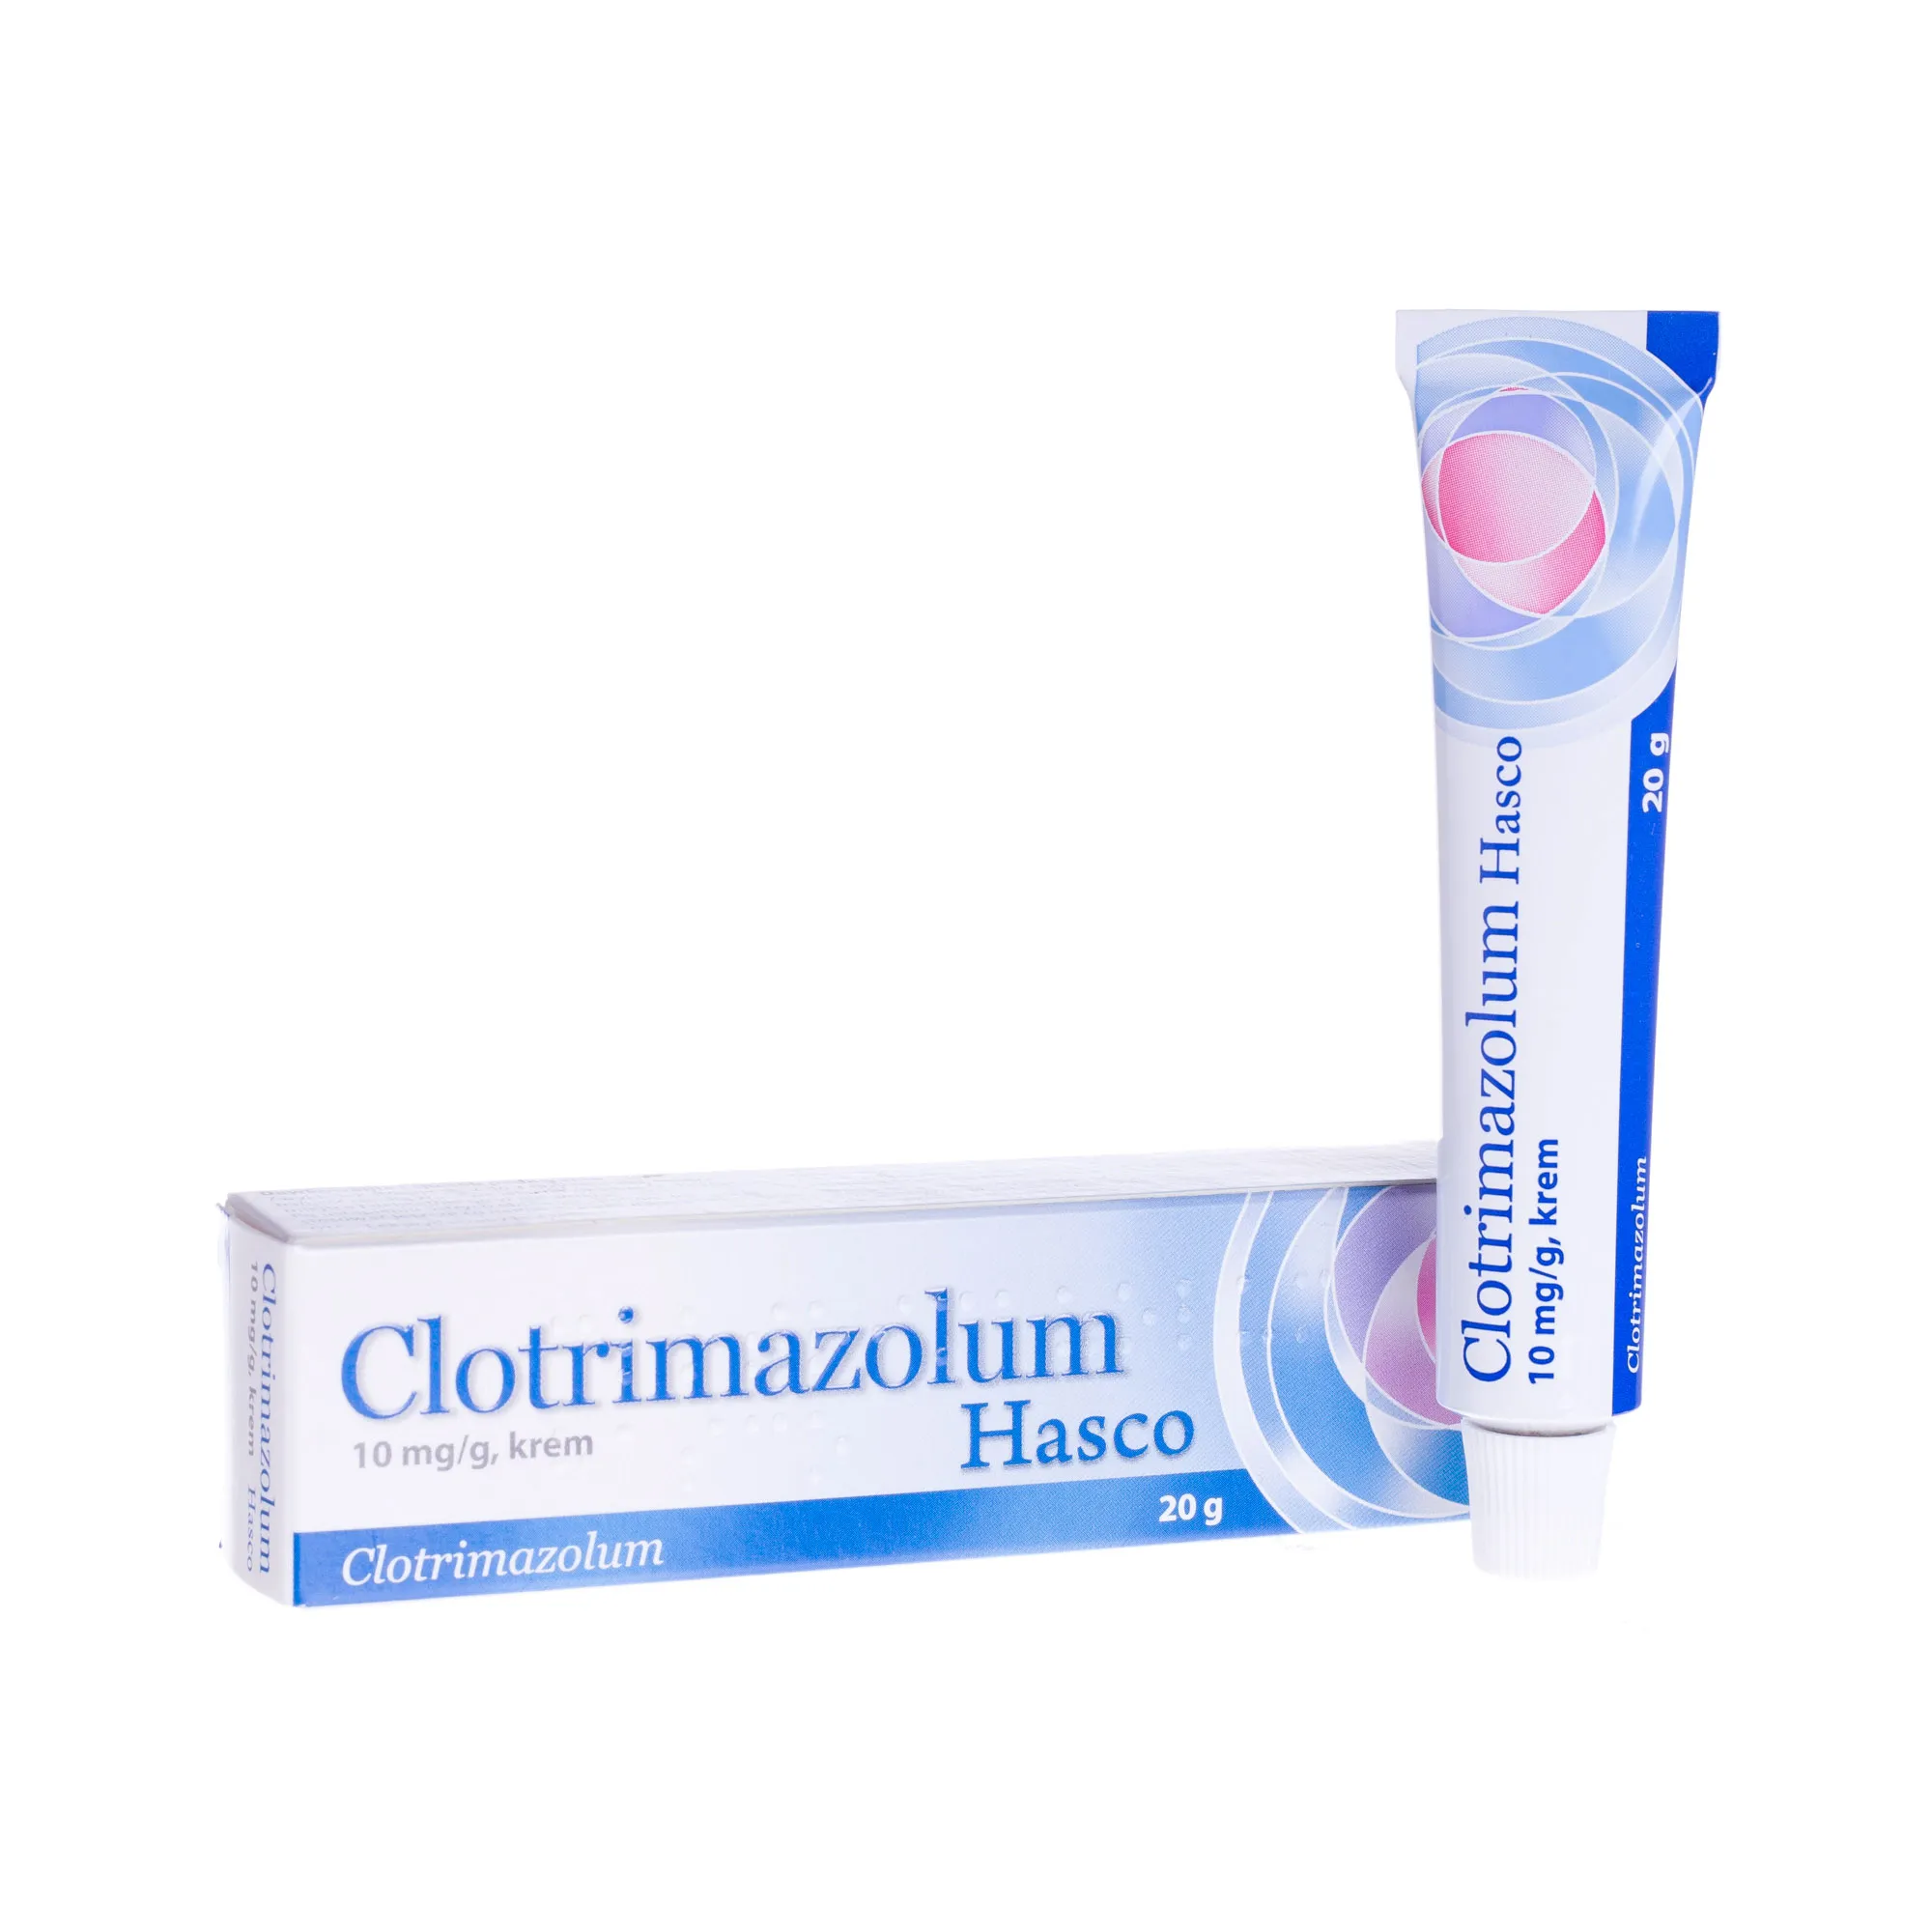 Clotrimazolum Hasco 10 mg/g krem, 20 g